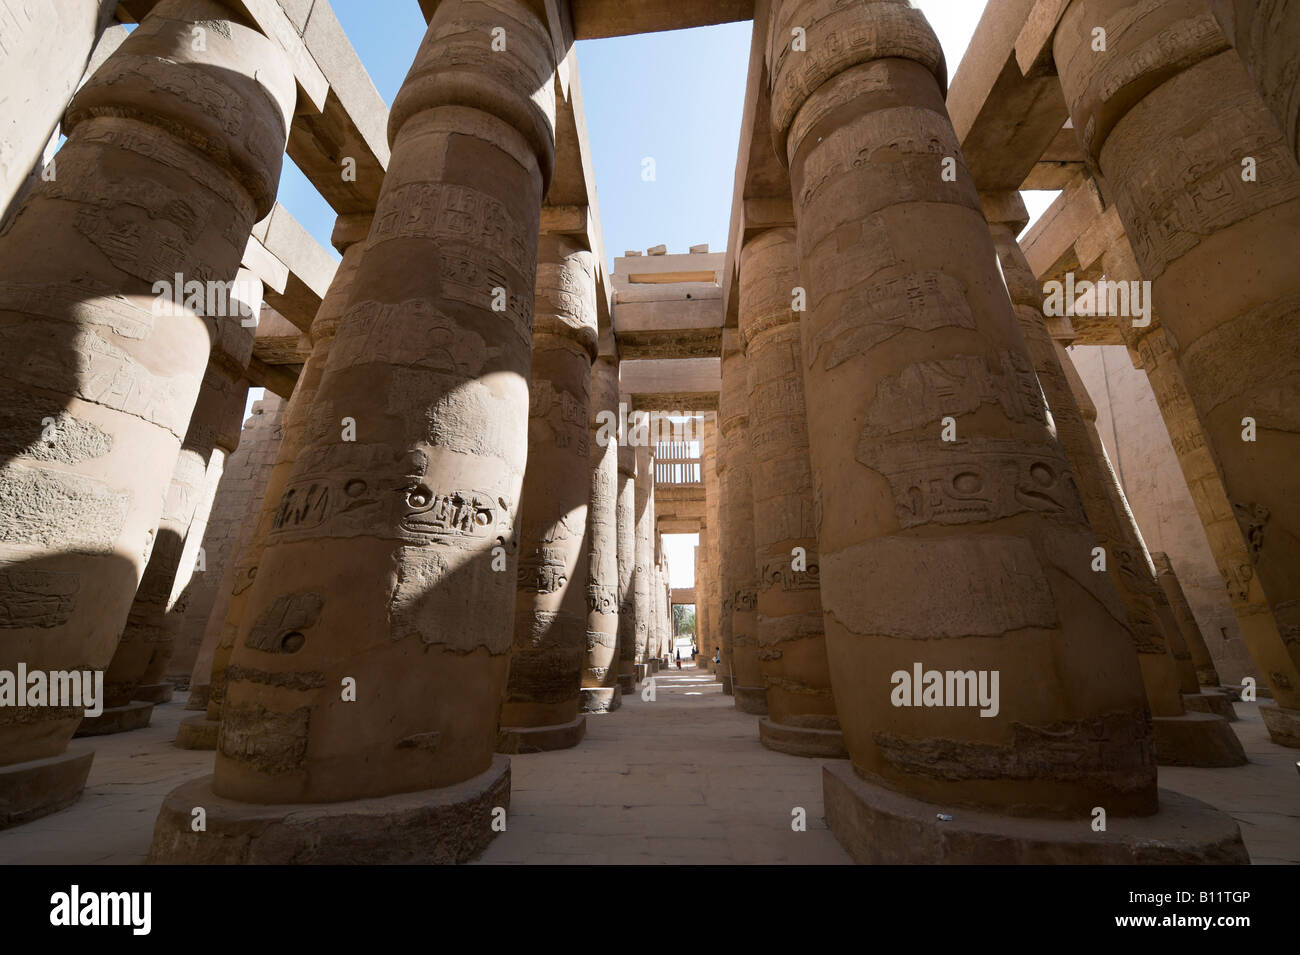 Piliers dans la salle hypostyle, de la Cité parlementaire d'Amon, Temple de Karnak, Louxor, vallée du Nil, l'Egypte Banque D'Images